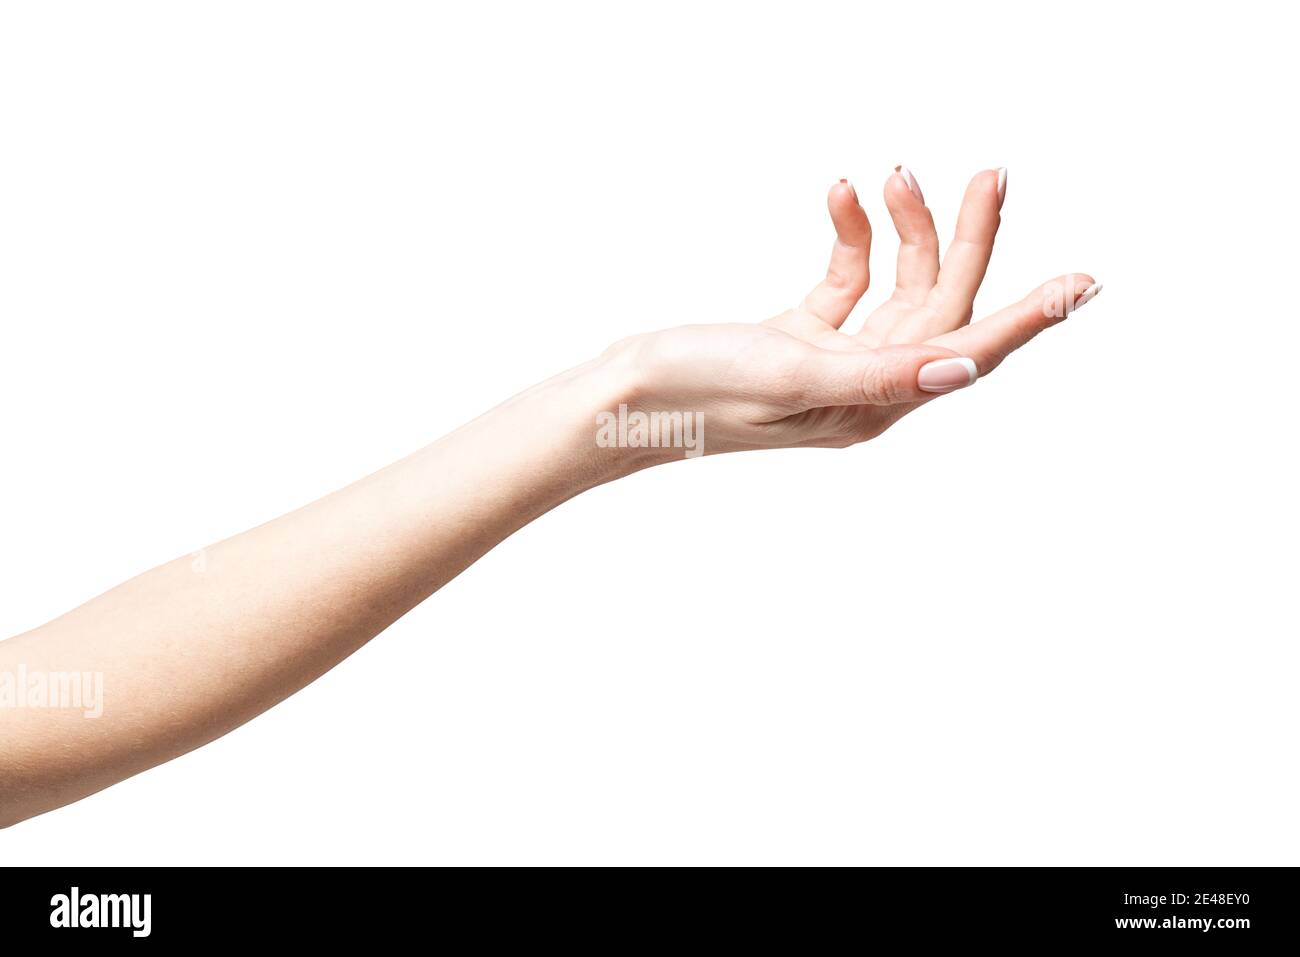 potage de la main femelle au doigt isolé sur fond blanc avec masque Banque D'Images